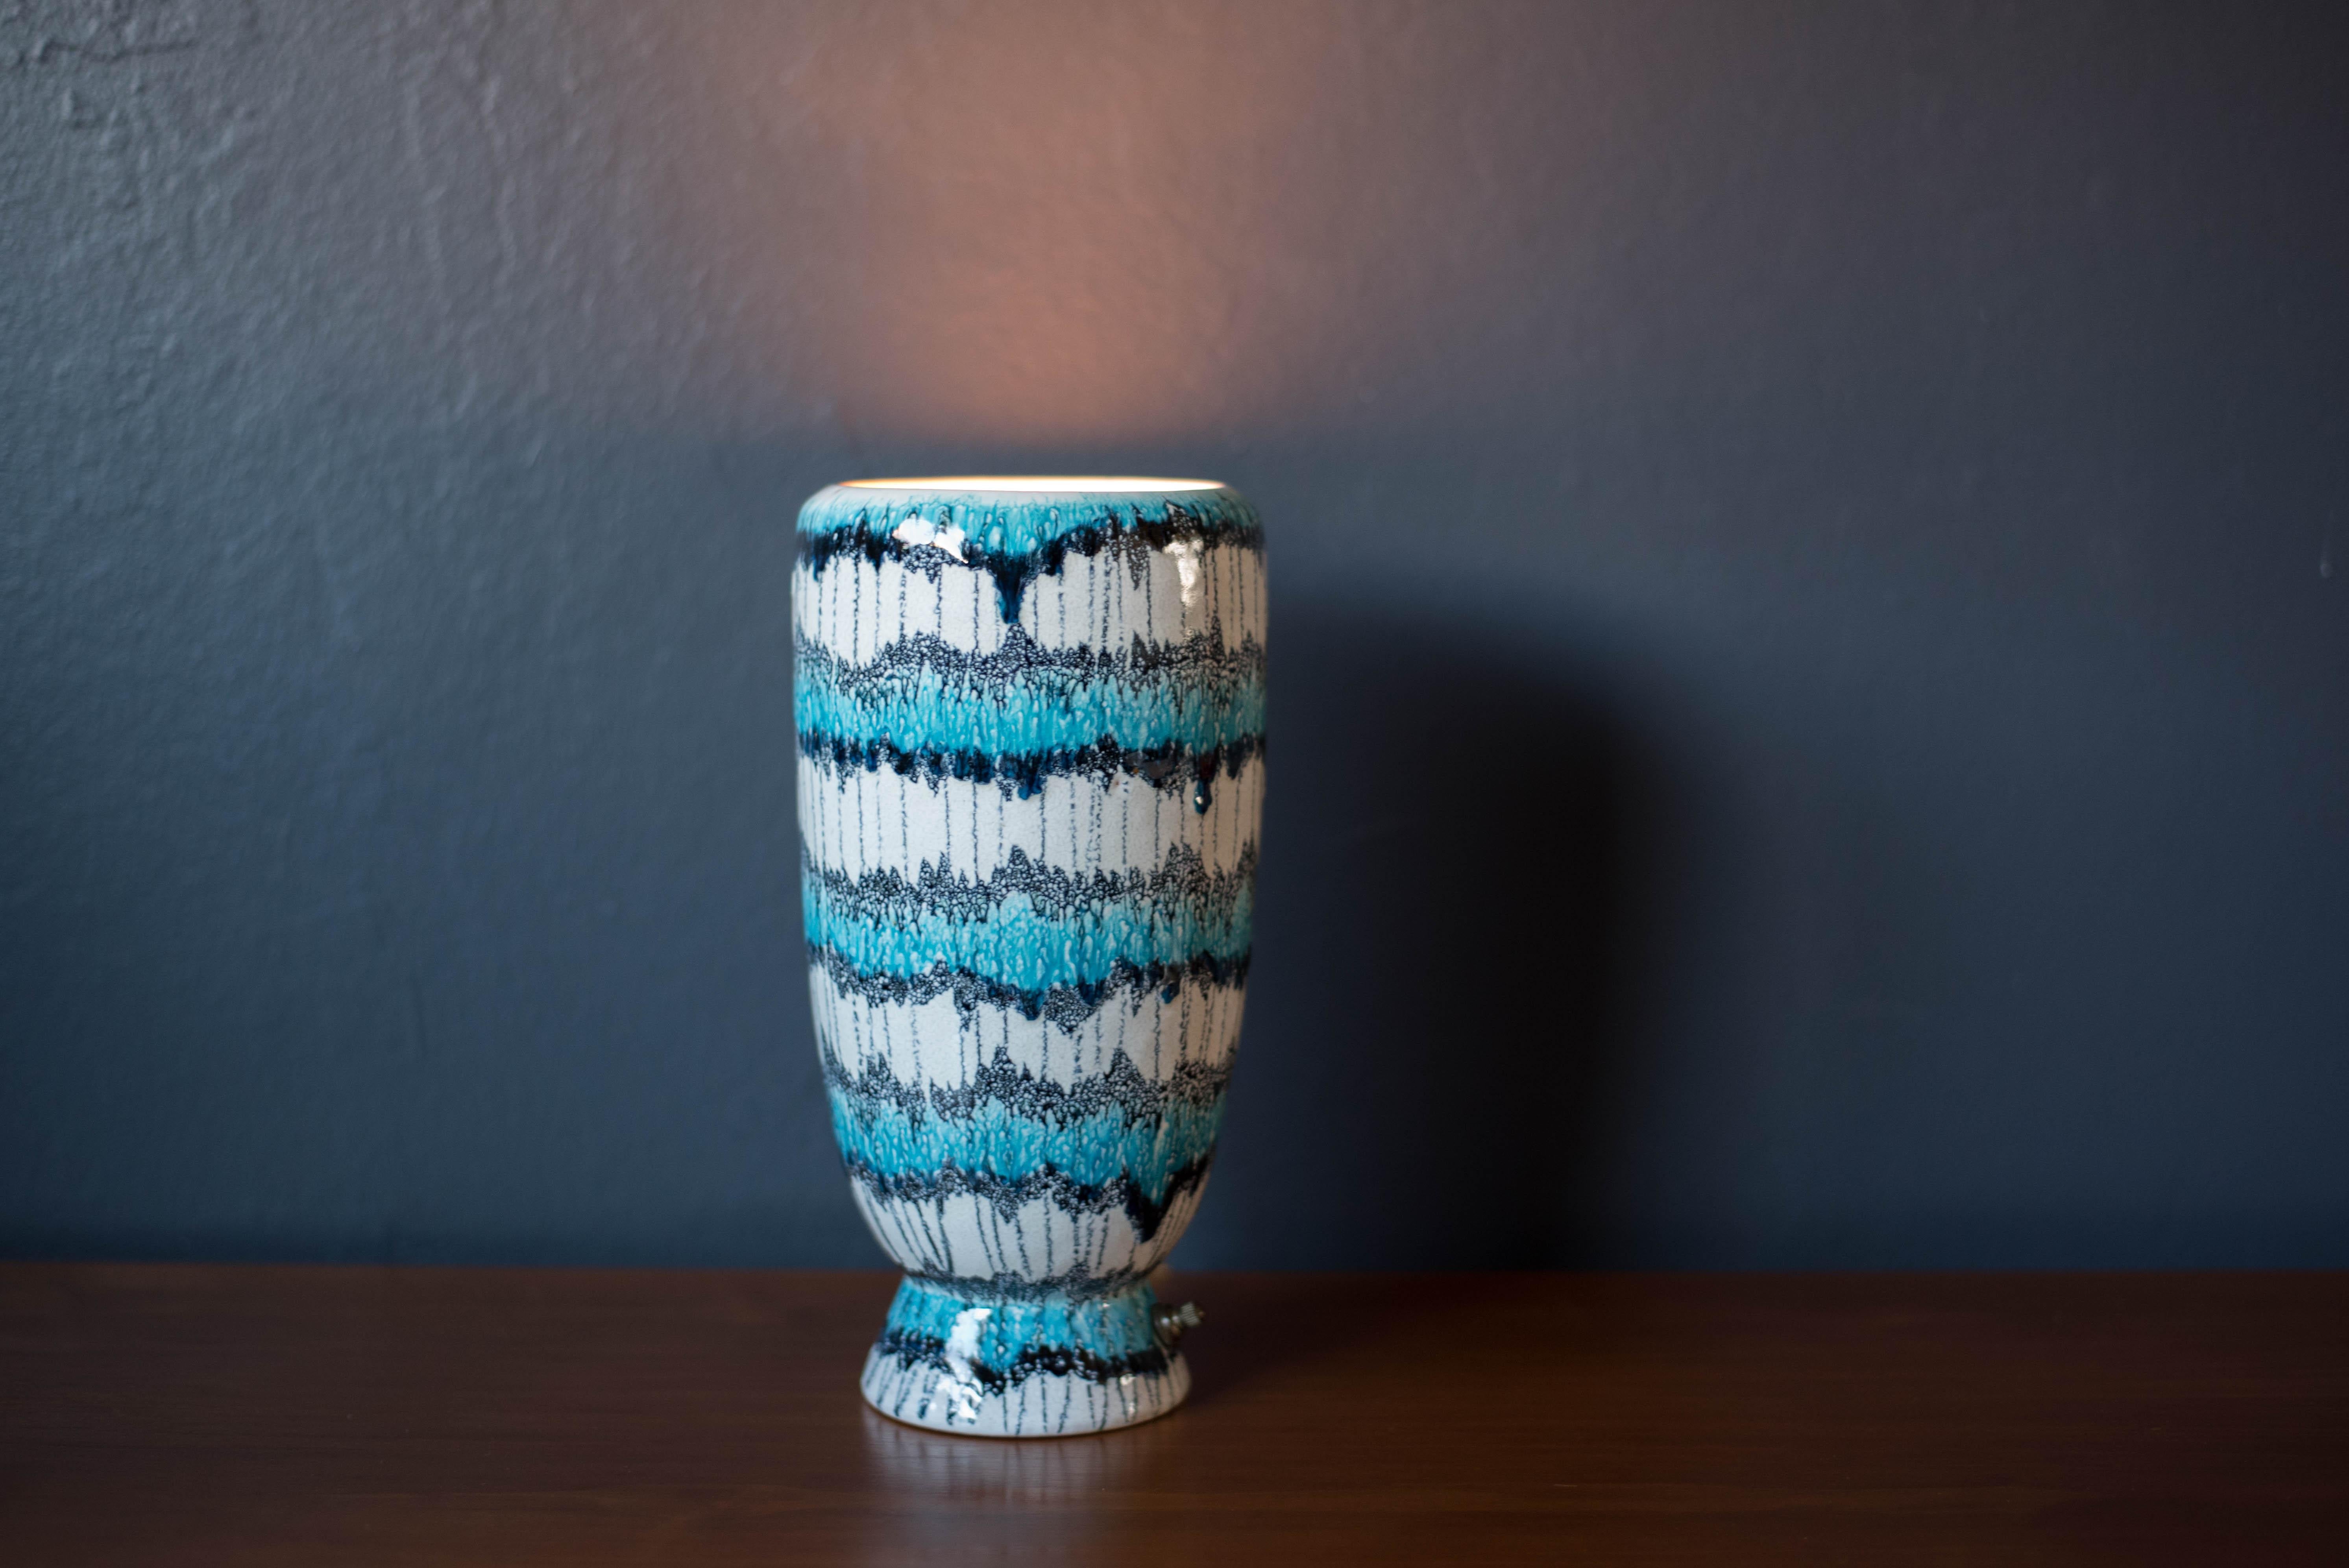 Mitte des Jahrhunderts moderne Keramik Steingut Keramik Tischlampe circa 1960's. Der Sockel aus weißer Keramik ist mit einer hellen Farbglasur in Hellblau und Schwarz versehen. Ausgestattet mit einem Messingschalter, der ein sanftes, warmes Licht